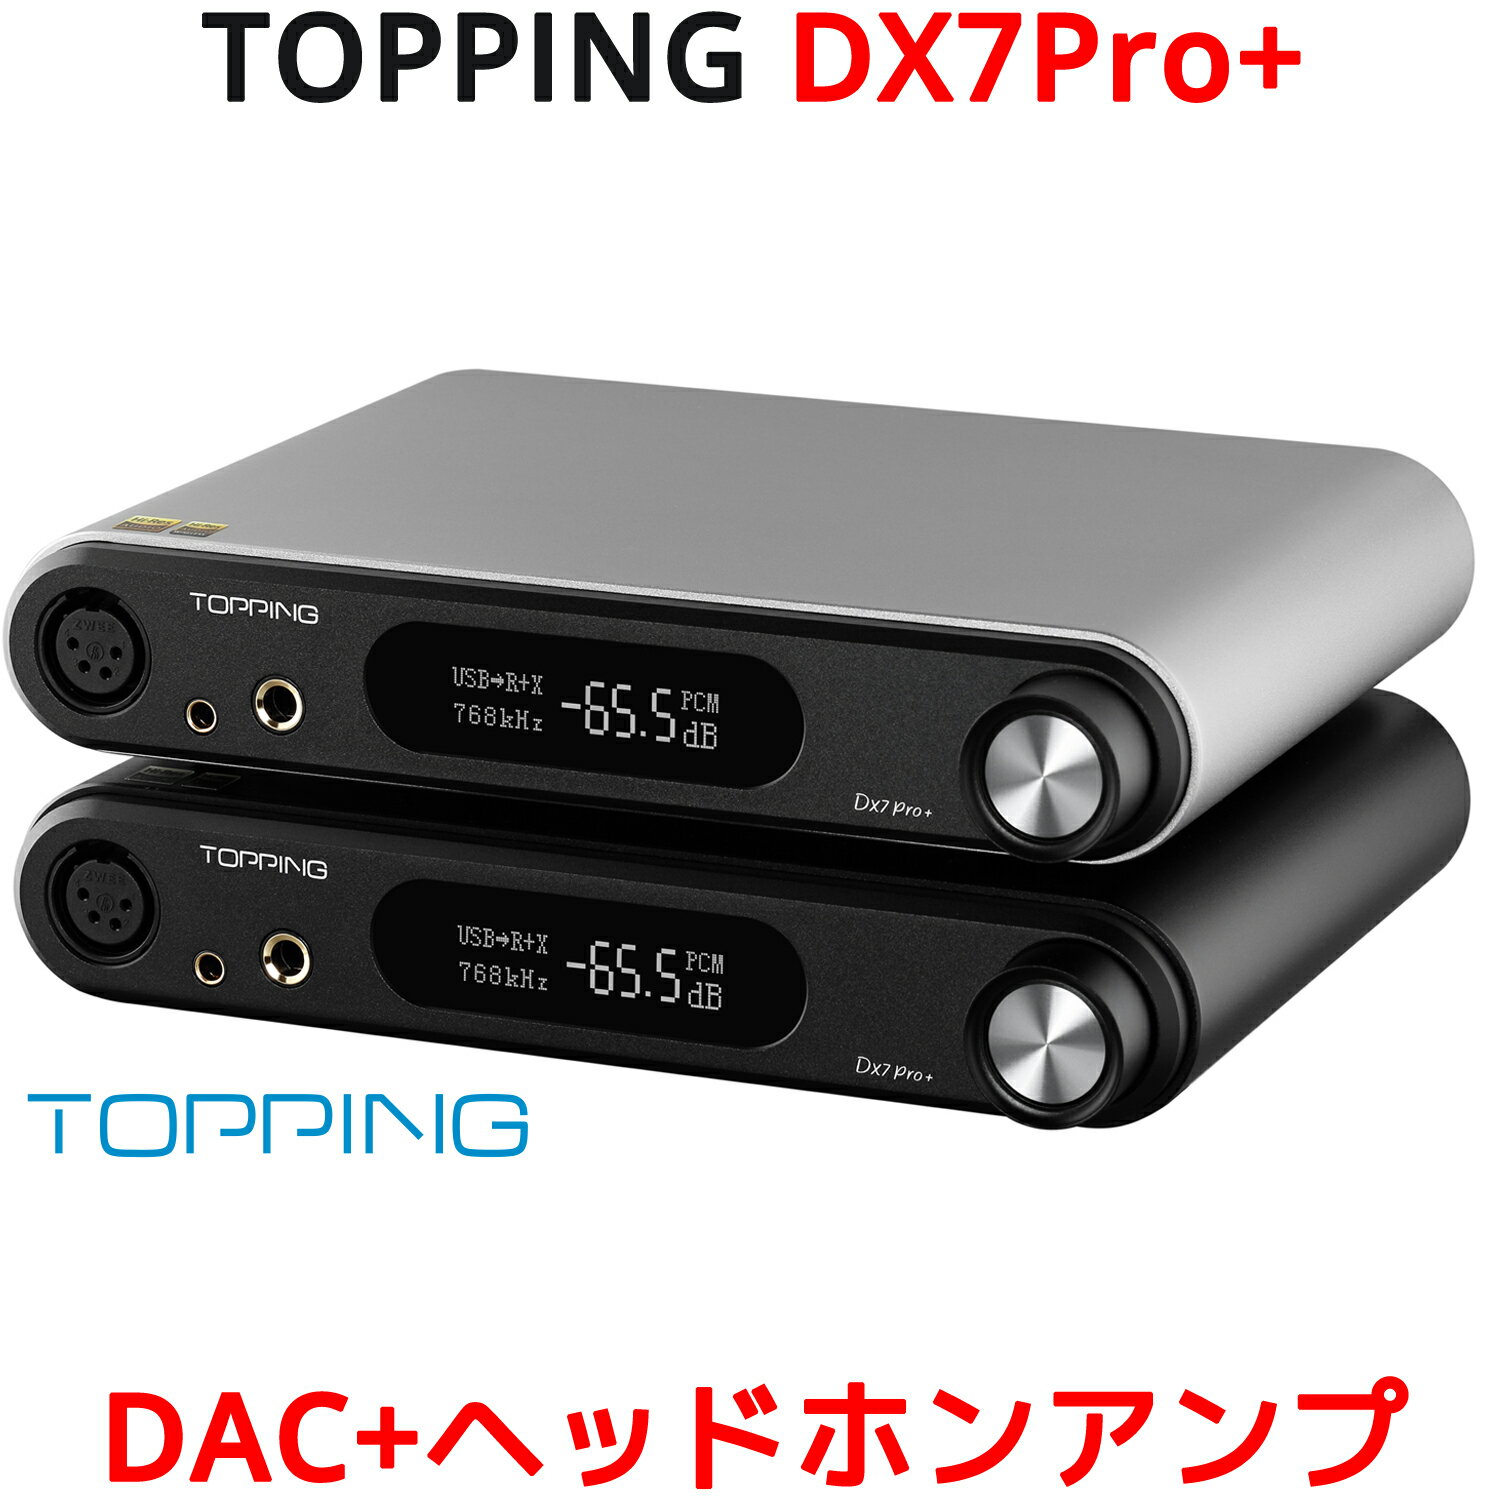 Topping トッピング DX7 Pro USB DAC ヘッドホンアンプ ハイエンドモデル ハイレゾ トッピング NFCA ヘッドフォン アンプ ES9038PRO Bluetooth5.1 LDAC I2S Iis バランス アンバランス 4ピンXLR 4.4mm 6.35mm 入力 RCA XLR 出力 DSD512 PCM768kHz 高音質 おすすめ 人気